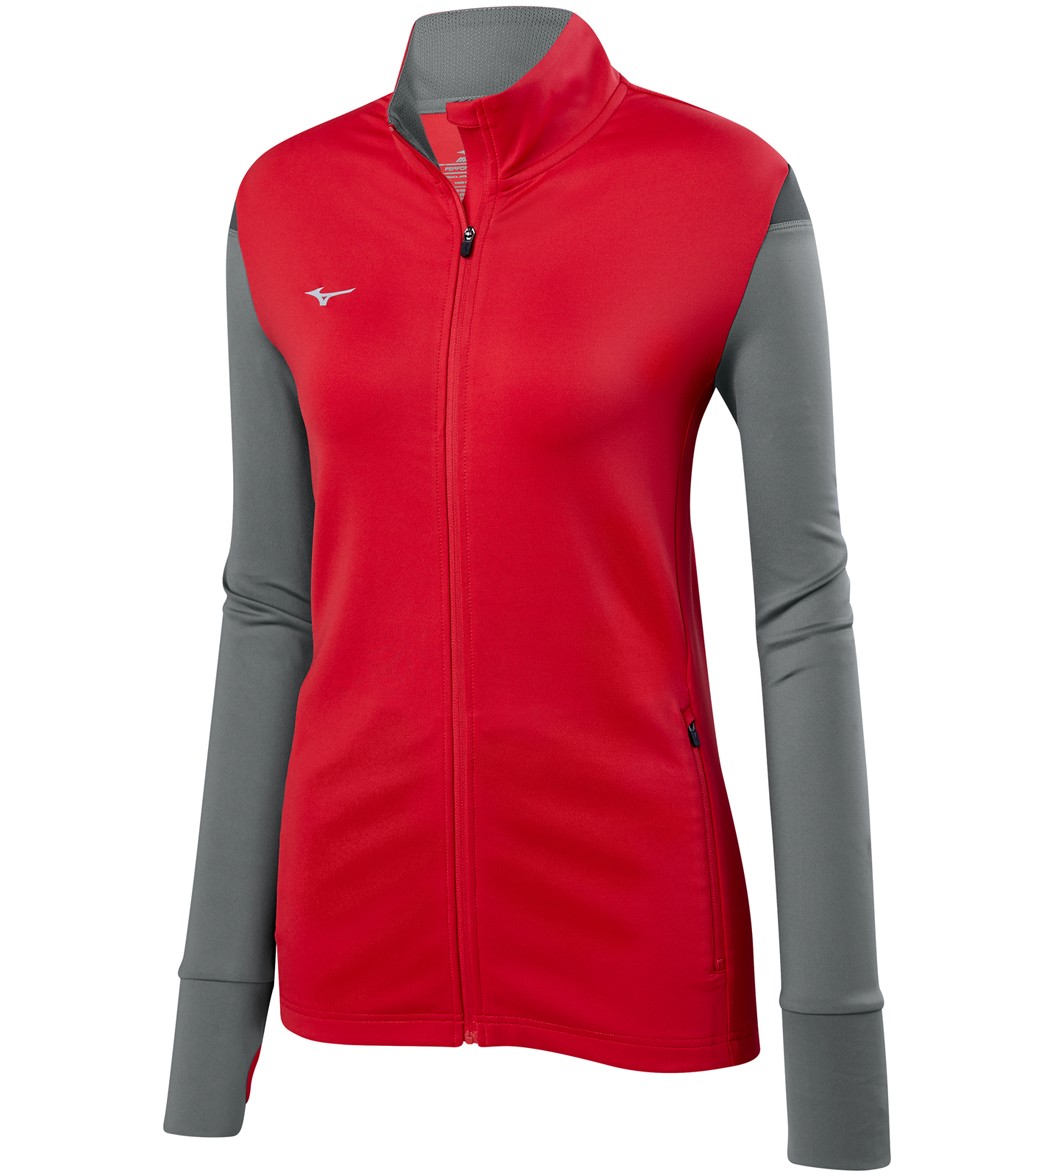 Mizuno Women's Horizon Full Zip Volleyball Jacket - Red/Grey/Charcoal Medium - Swimoutlet.com